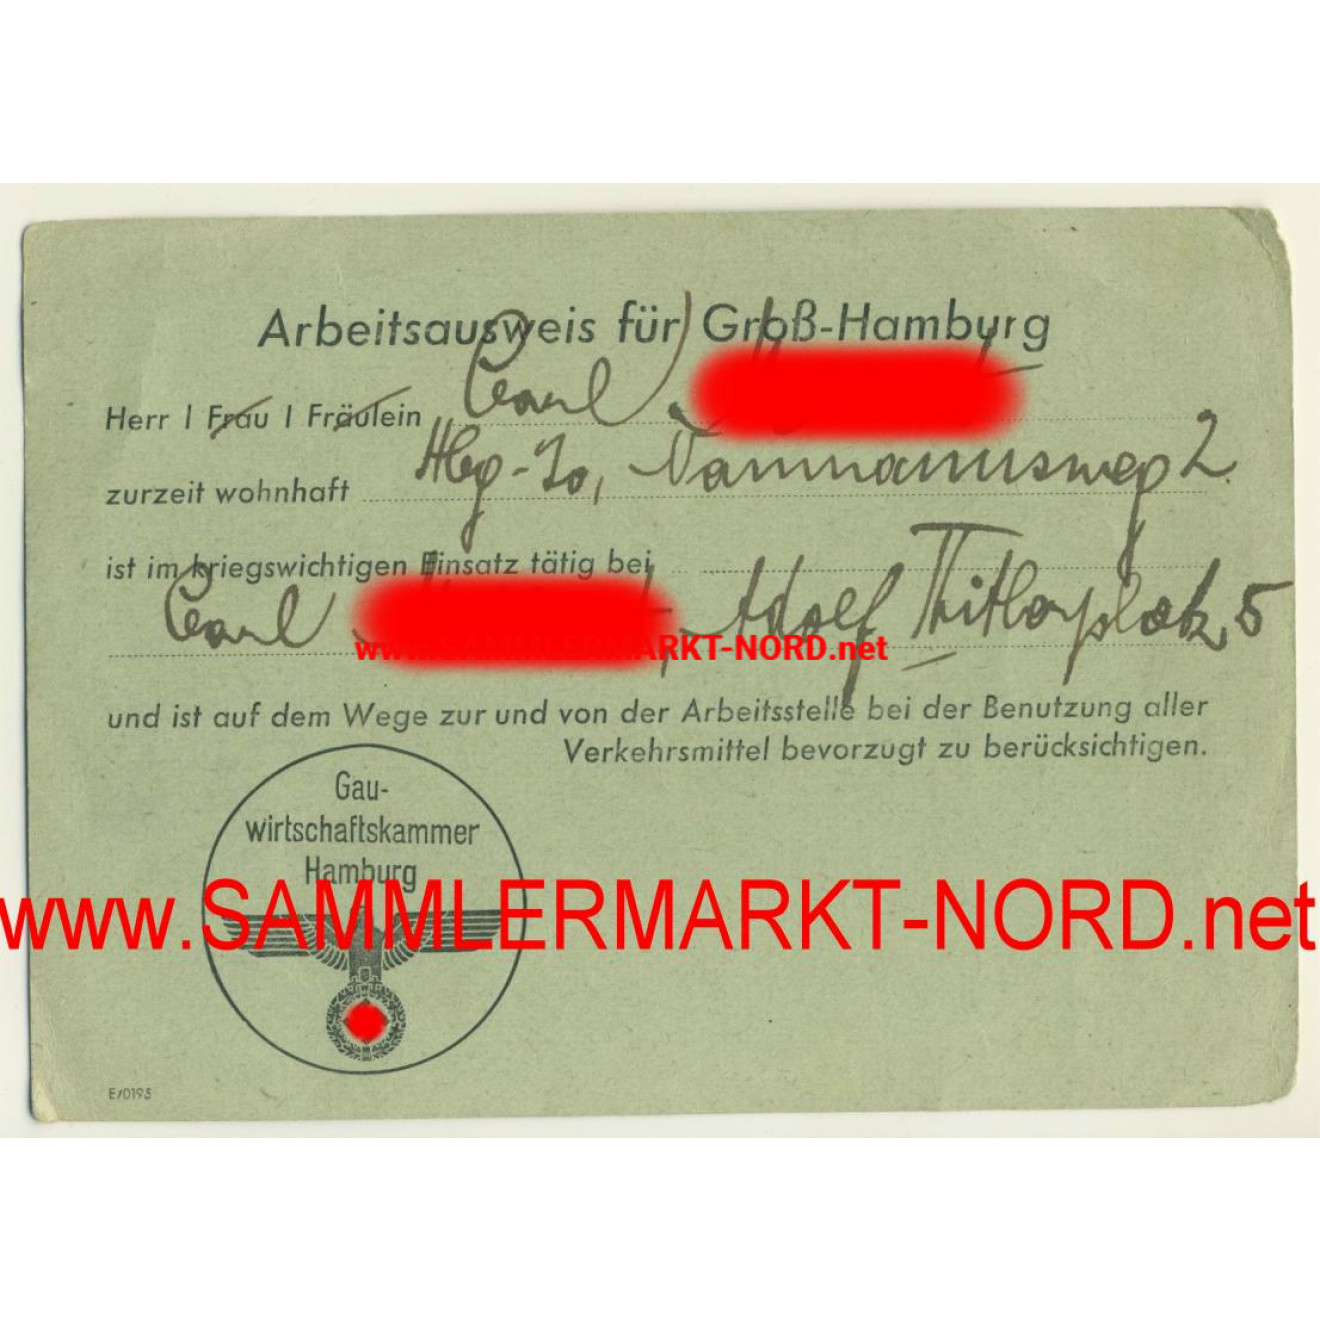 Work document of identification for Groß - Hamburg